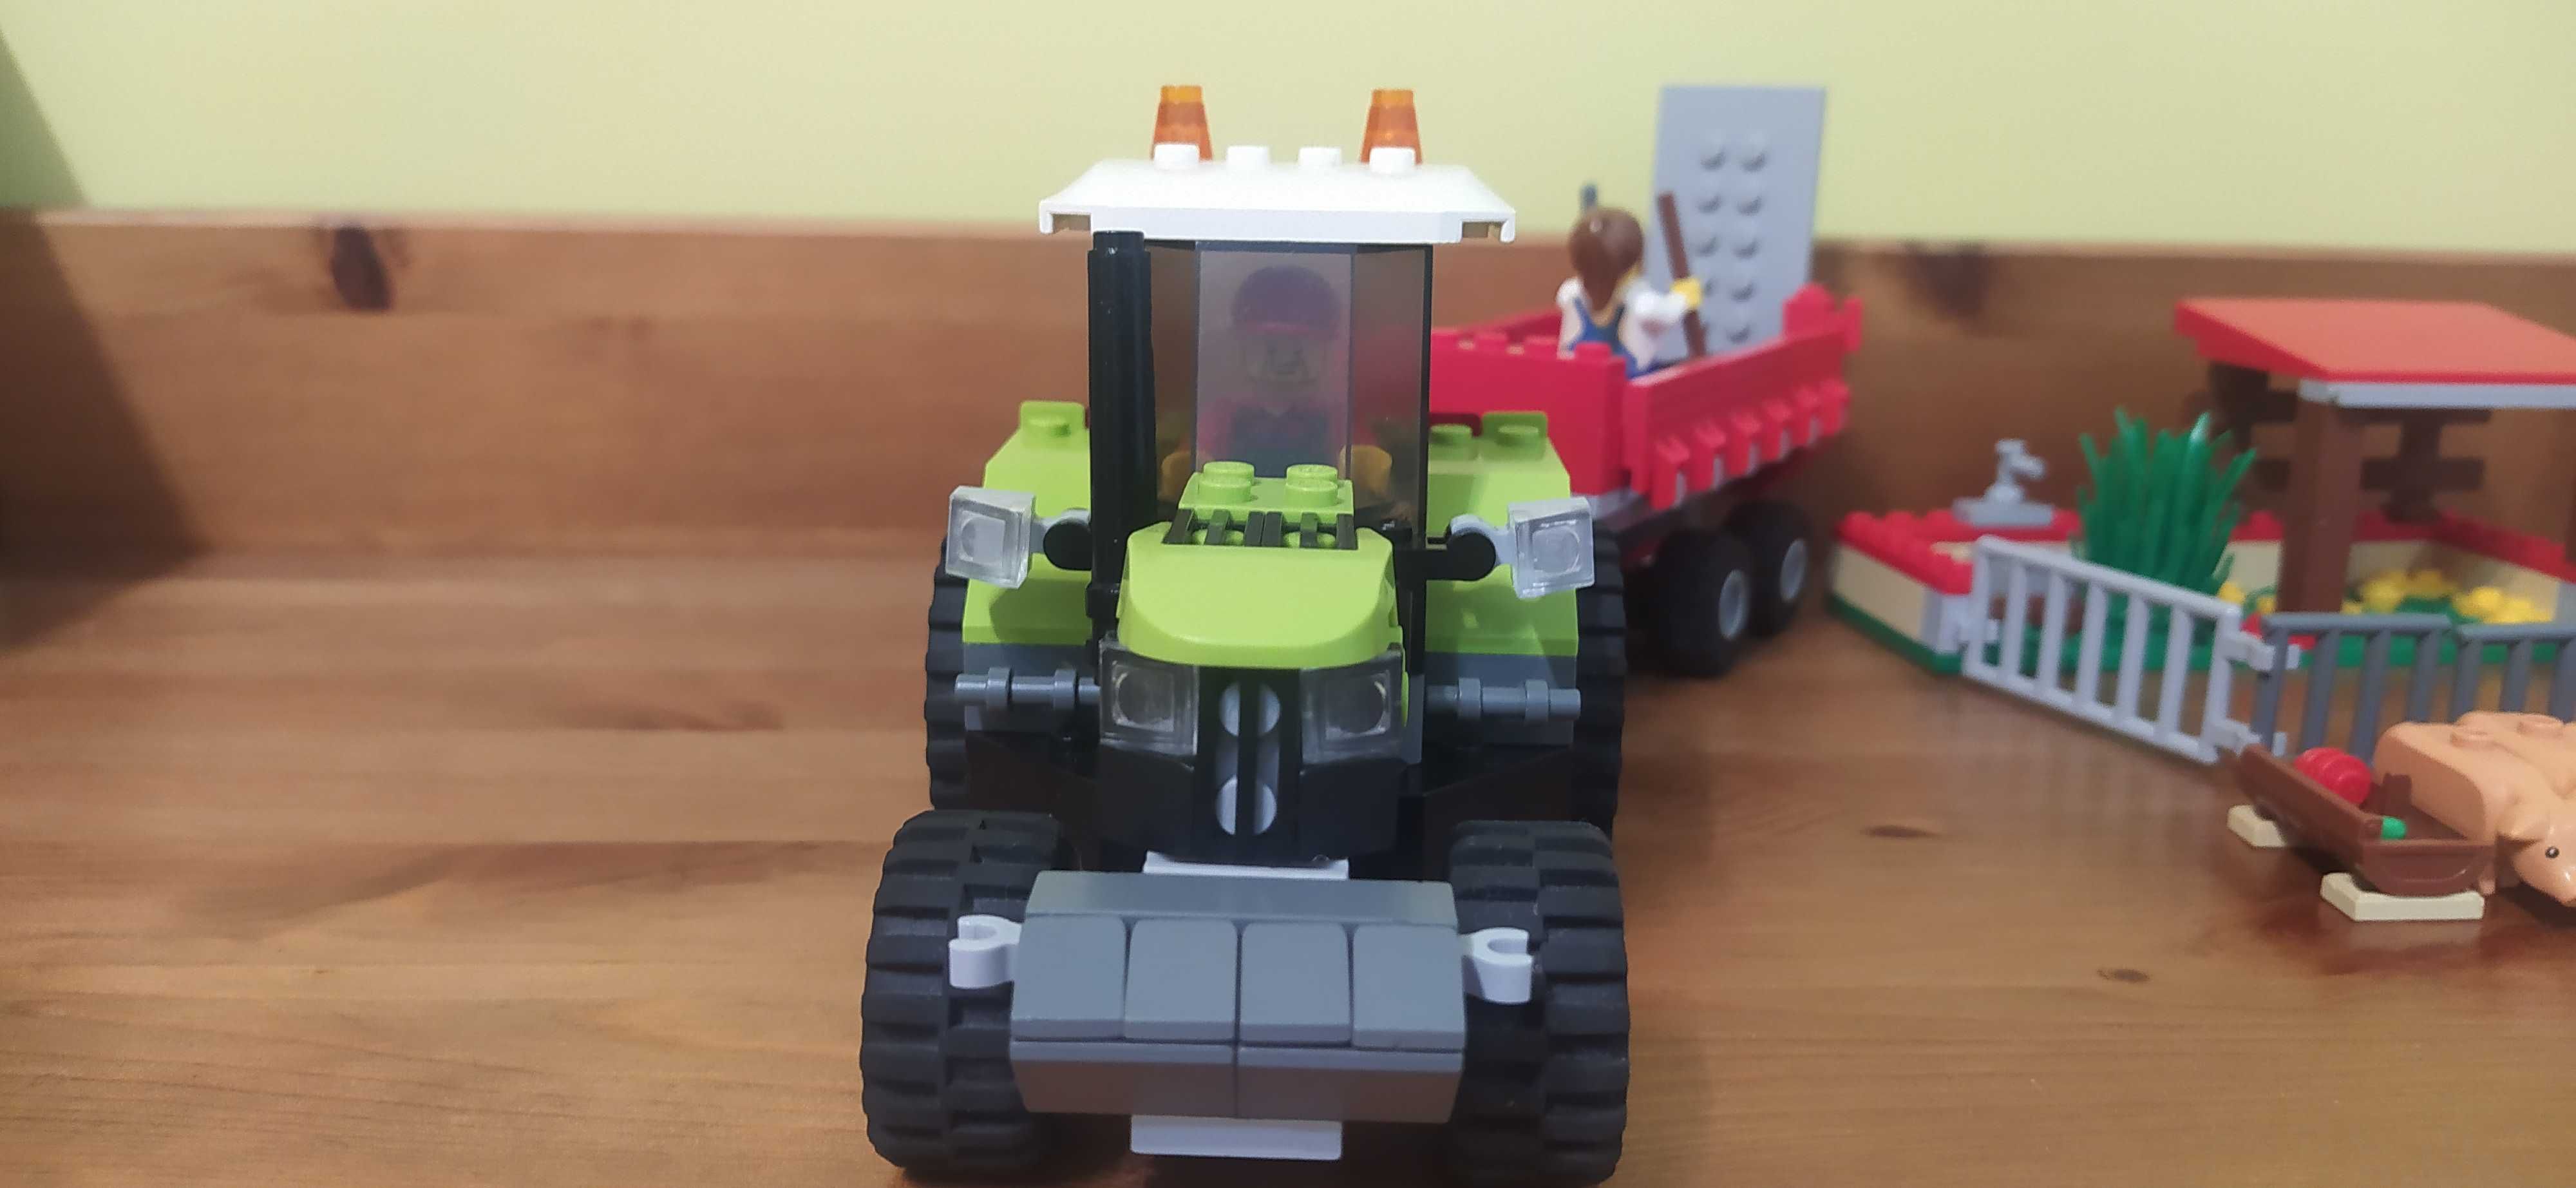 Zielny traktor lego 7684